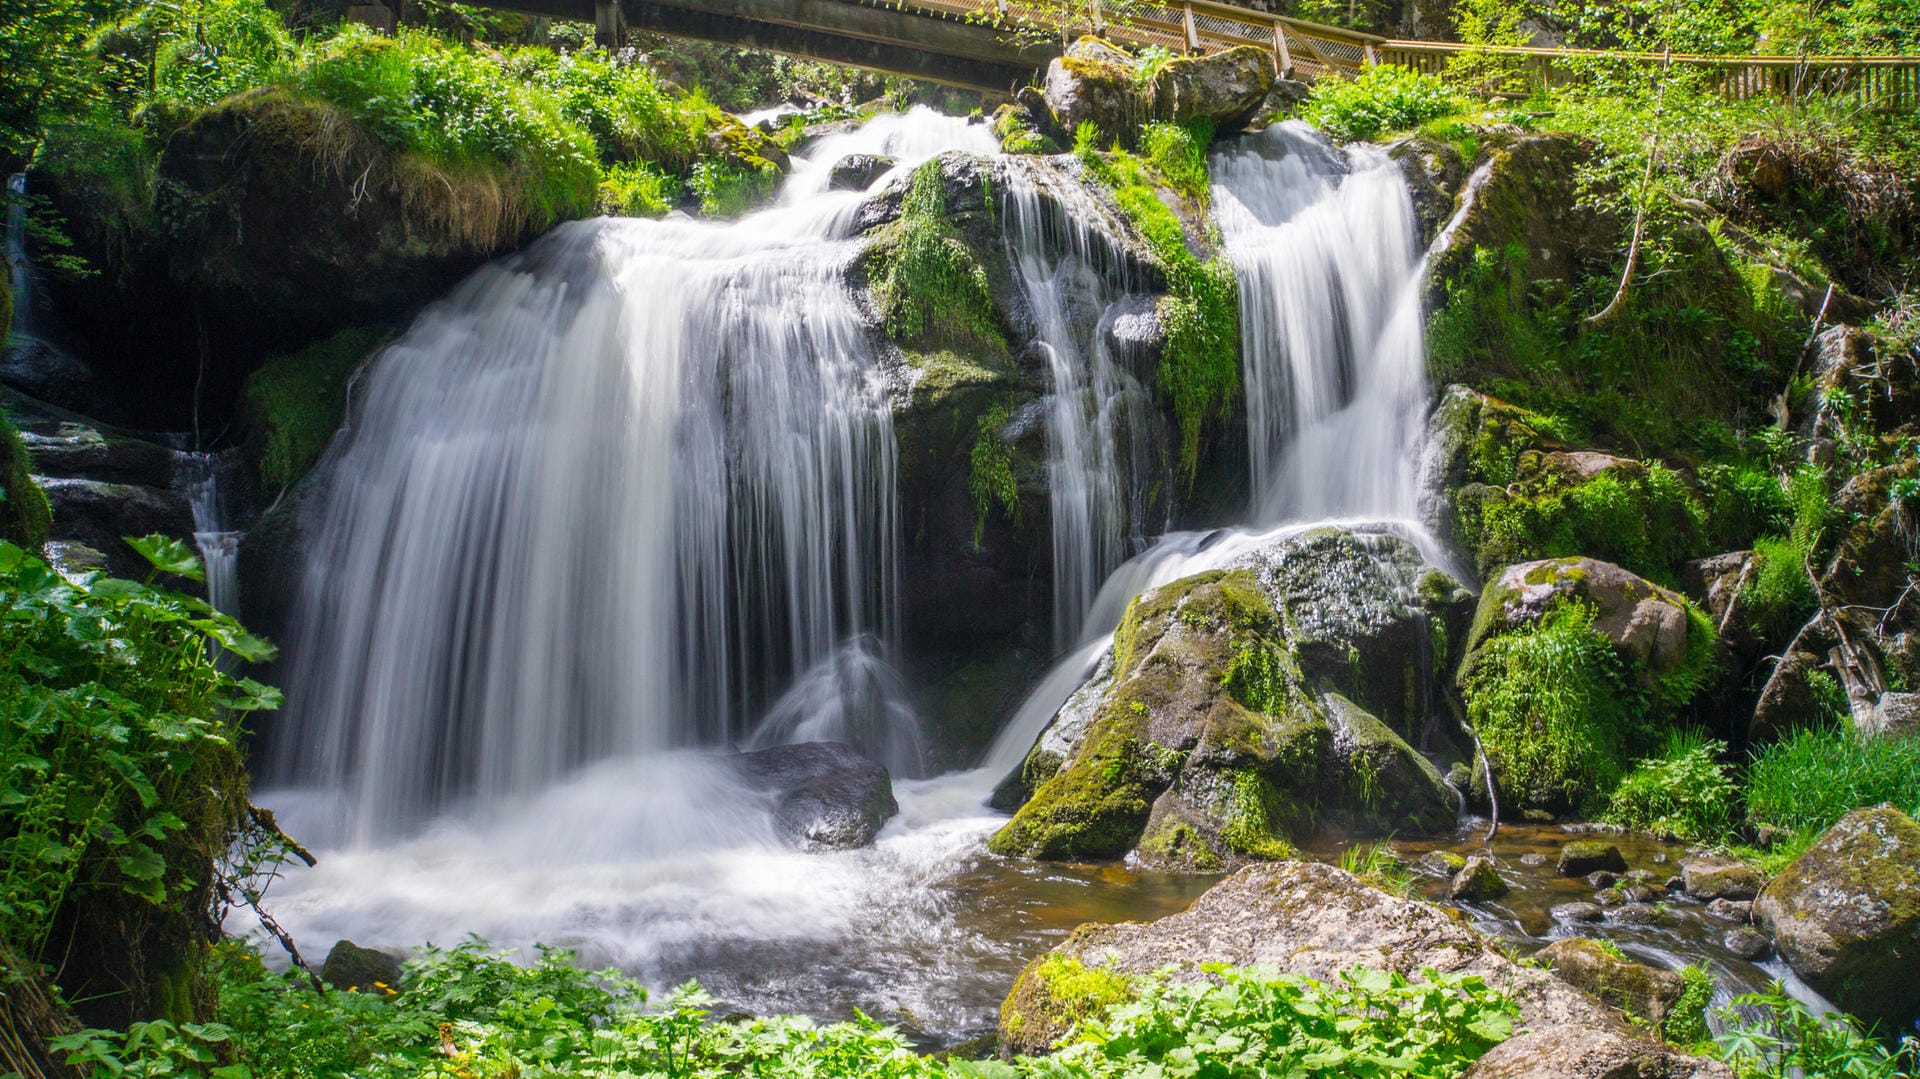 Triberger Wasserfälle: Das Wasser stürzt 163 Meter hinab und bietet besonders nach starken Regenfällen ein enormes Spektakel.